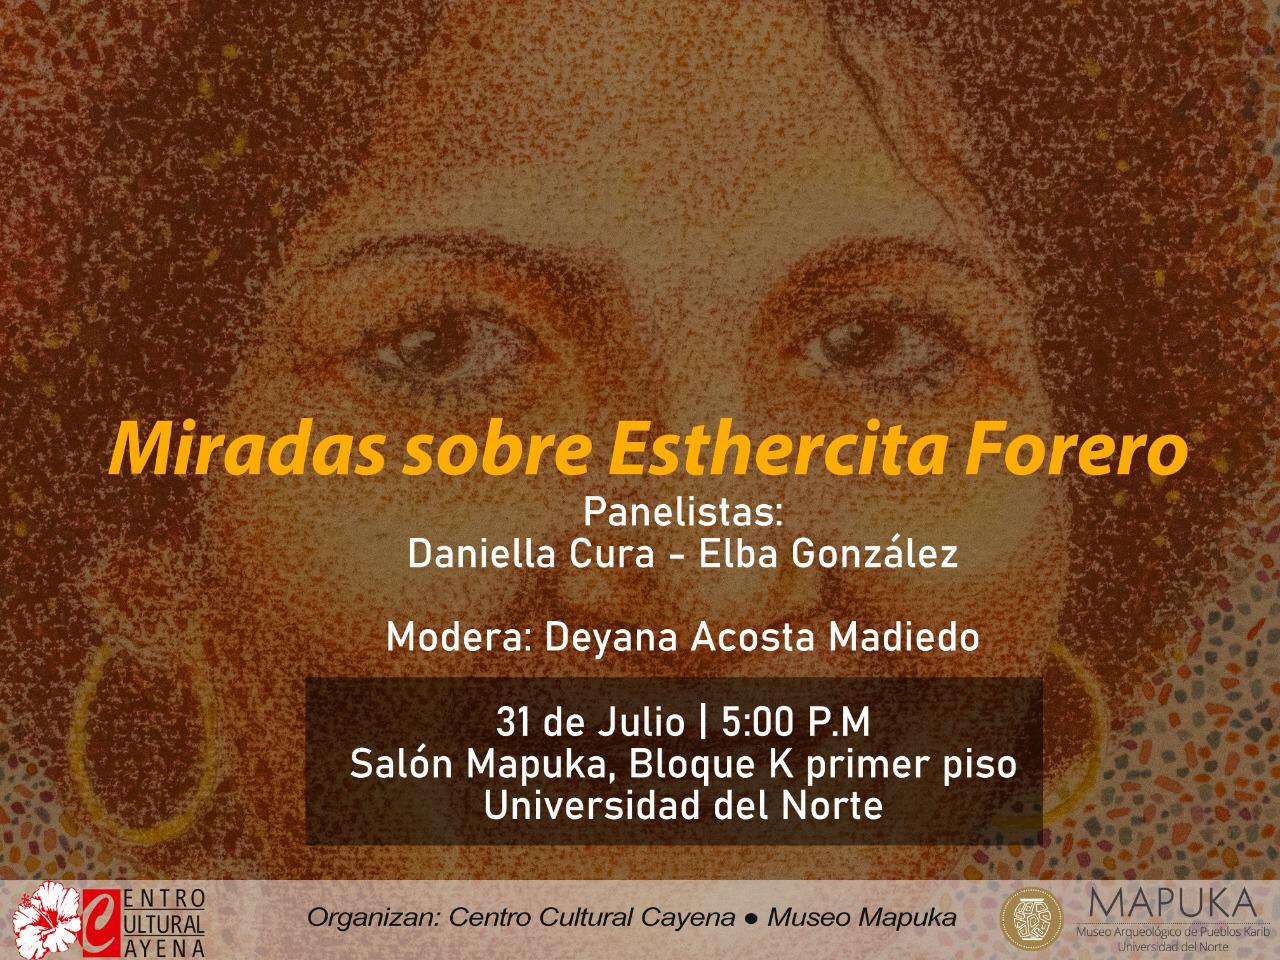 Evento organizado por el Centro Cultural Cayena y el Museo Mapuka.